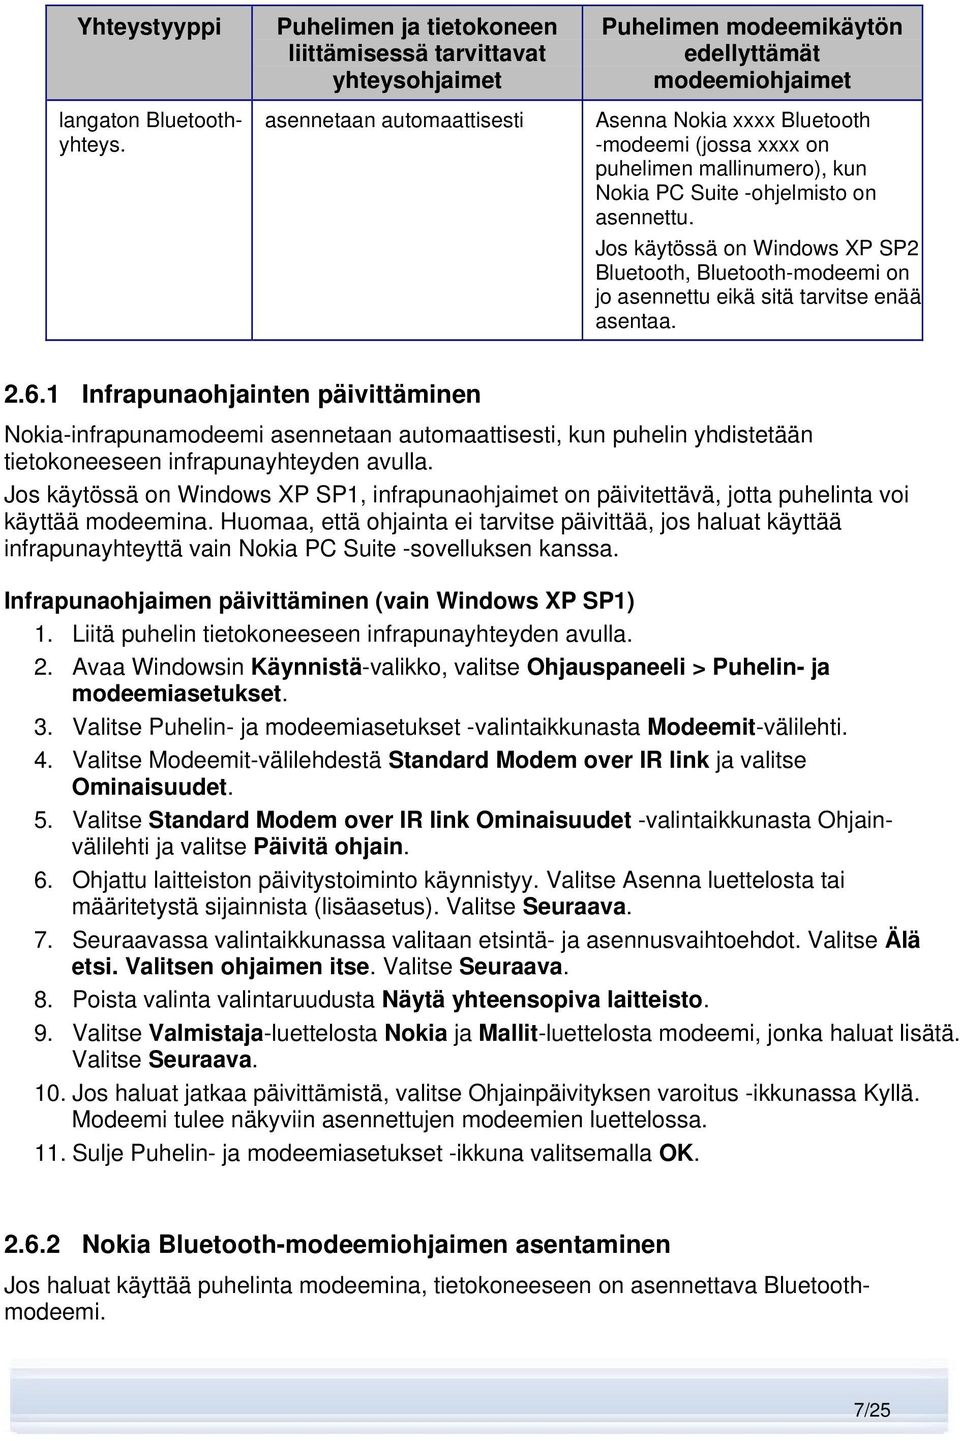 puhelimen mallinumero), kun Nokia PC Suite -ohjelmisto on asennettu. Jos käytössä on Windows XP SP2 Bluetooth, Bluetooth-modeemi on jo asennettu eikä sitä tarvitse enää asentaa. 2.6.